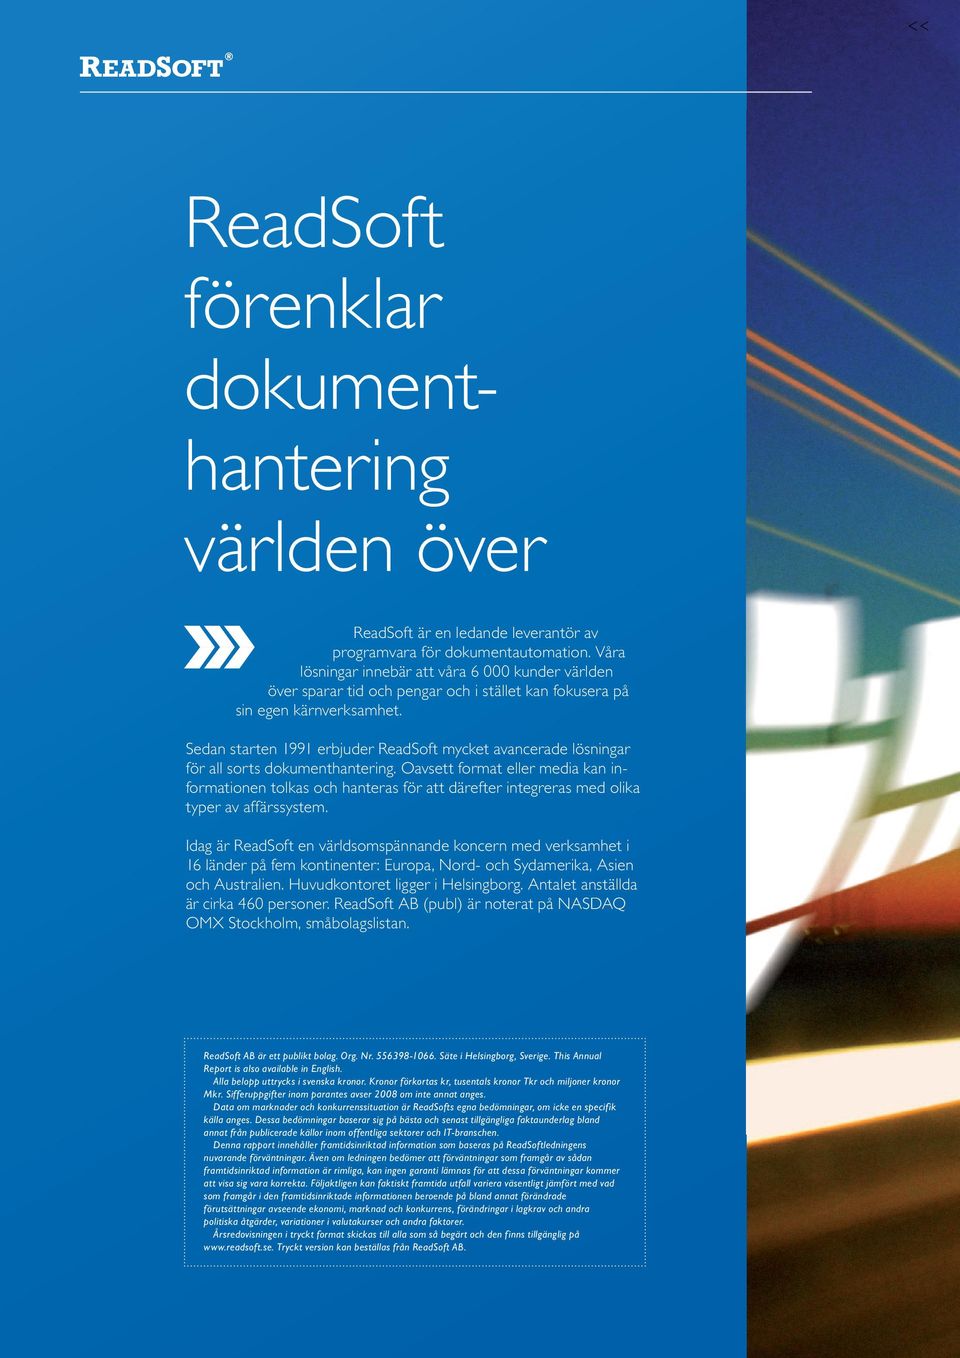 Sedan starten 1991 erbjuder ReadSoft mycket avancerade lösningar för all sorts dokumenthantering.